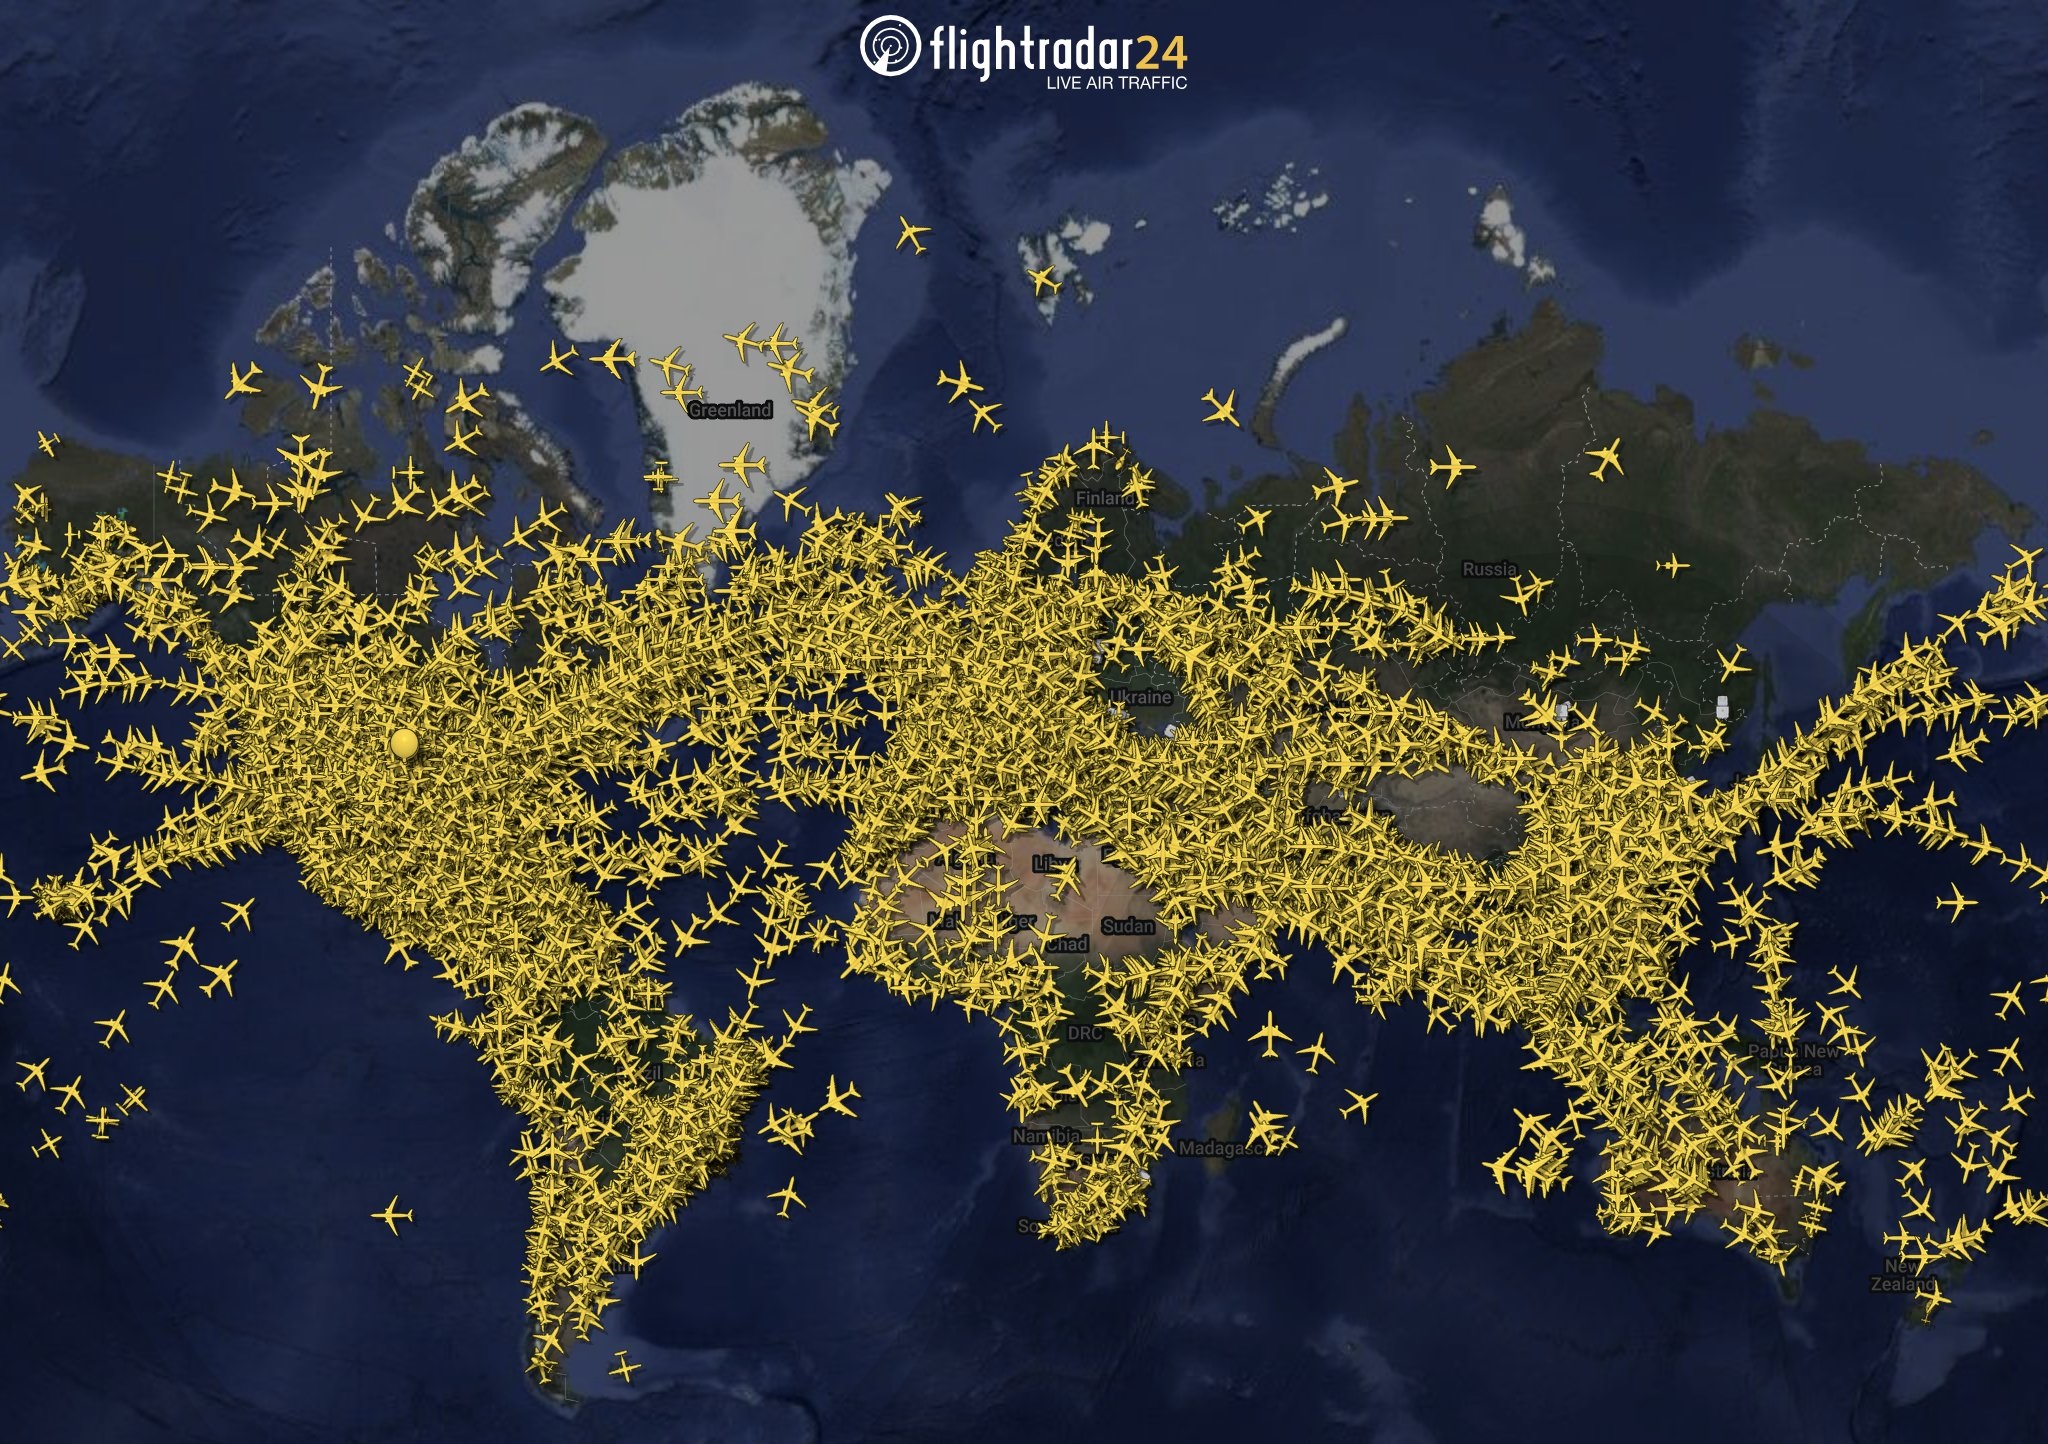 6 يوليو الأكثر ازدحاماً في عالم الطيران بـ 134386 رحلة تجارية